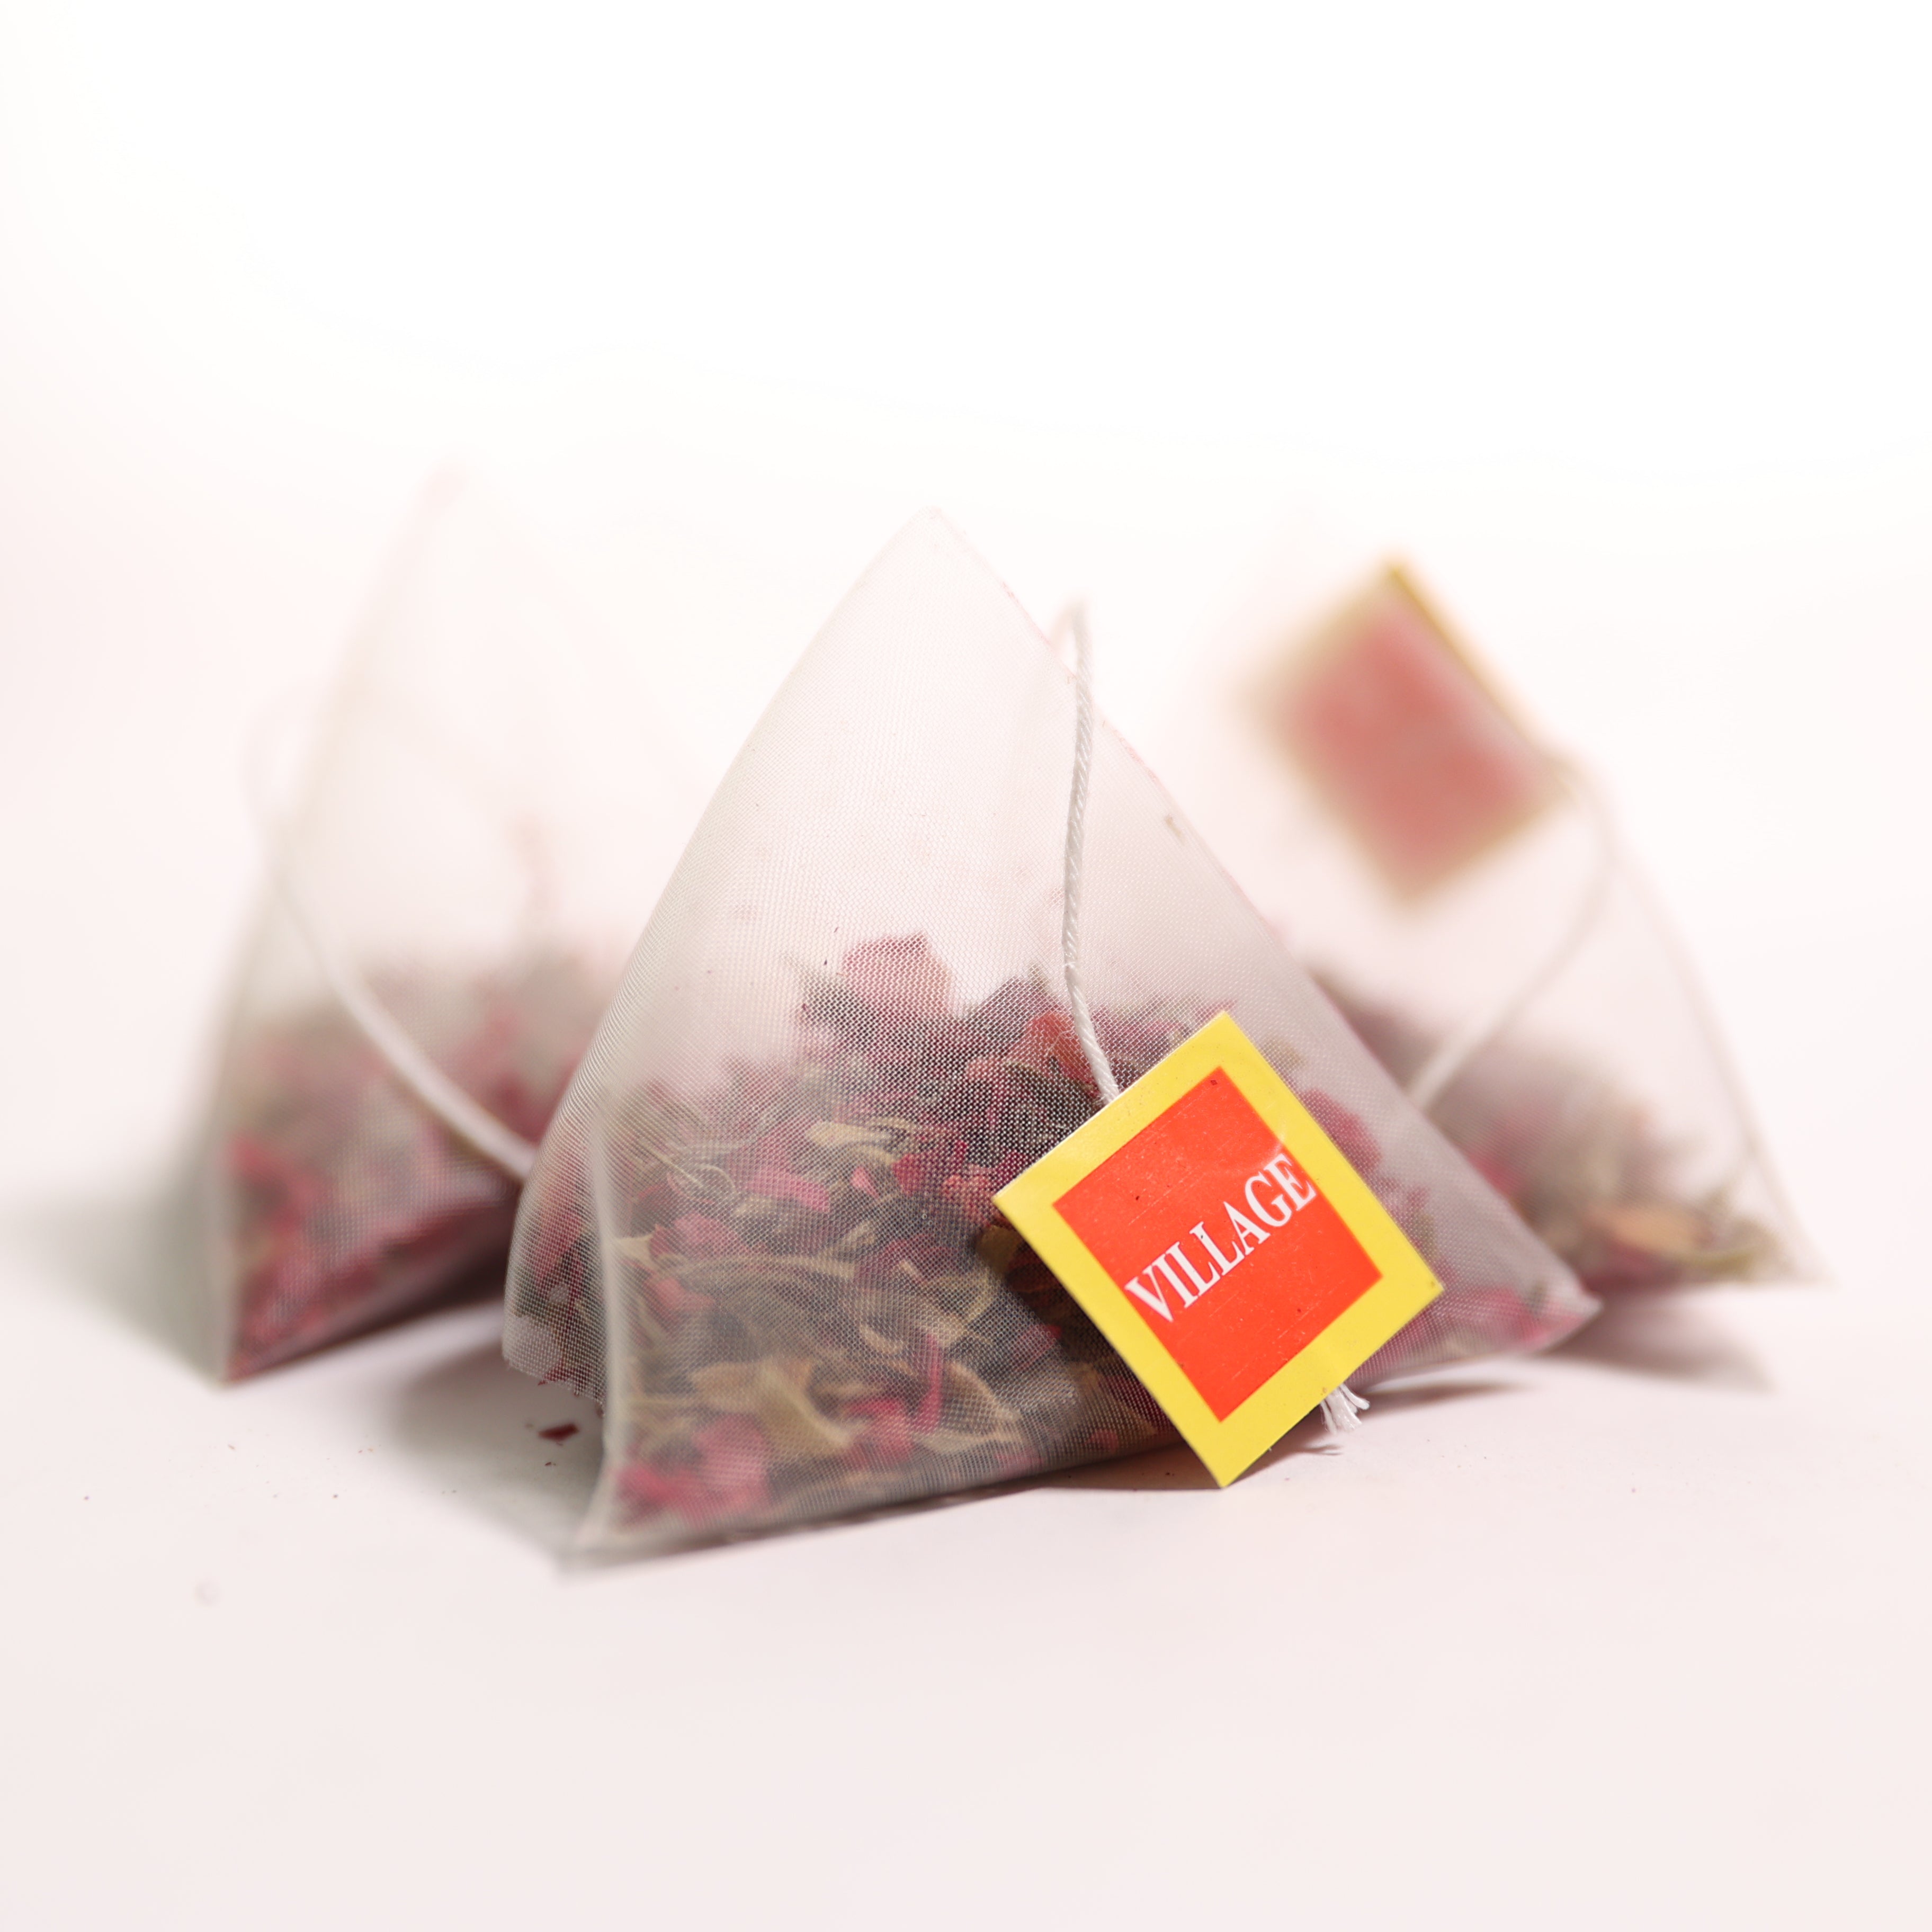 Rose Tisane Pyramid Teabags (x20)